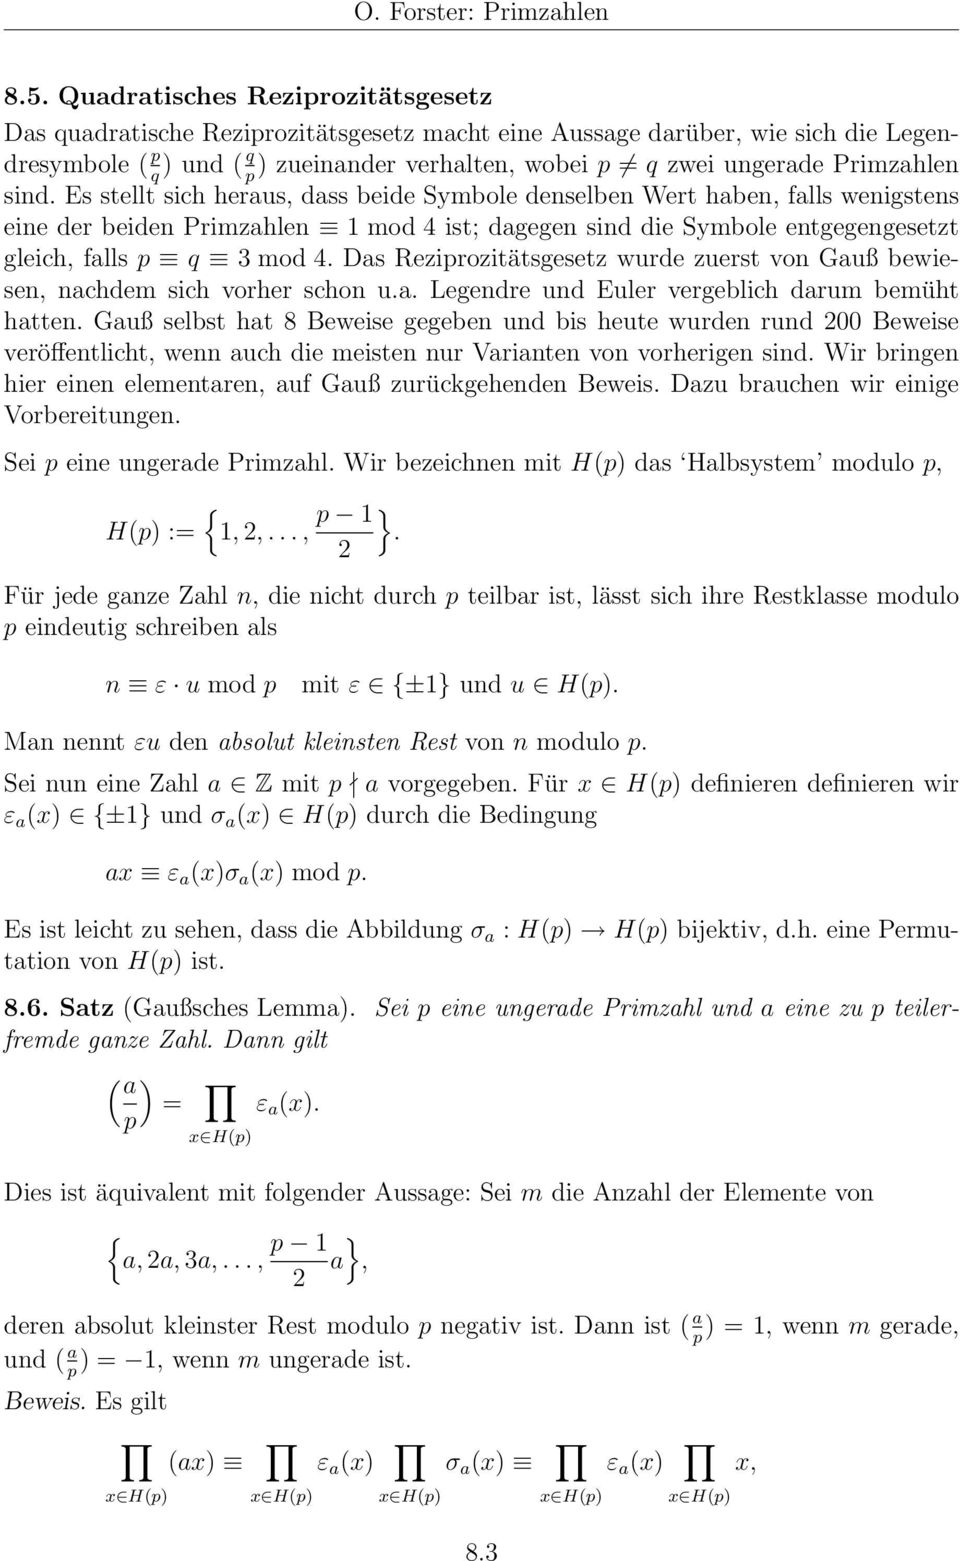 Rezirozitätsgesetz wurde zuerst von Gauß bewiesen, nachde sich vorher schon ua Legendre und Euler vergeblich daru beüht hatten Gauß selbst hat 8 Beweise gegeben und bis heute wurden rund 200 Beweise